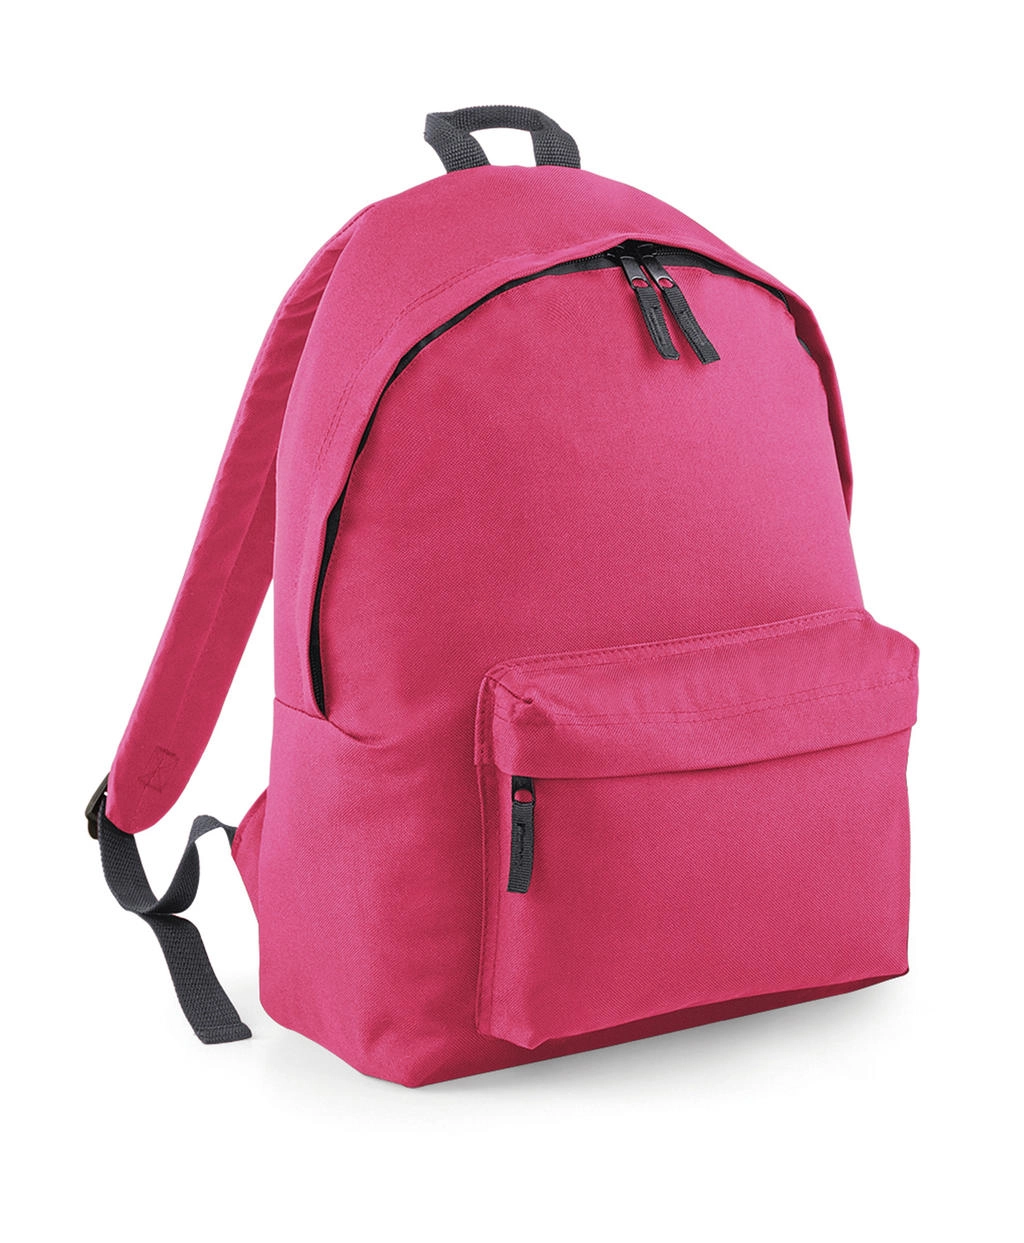 Original Fashion Backpack zum Besticken und Bedrucken in der Farbe True Pink/Graphite Grey mit Ihren Logo, Schriftzug oder Motiv.